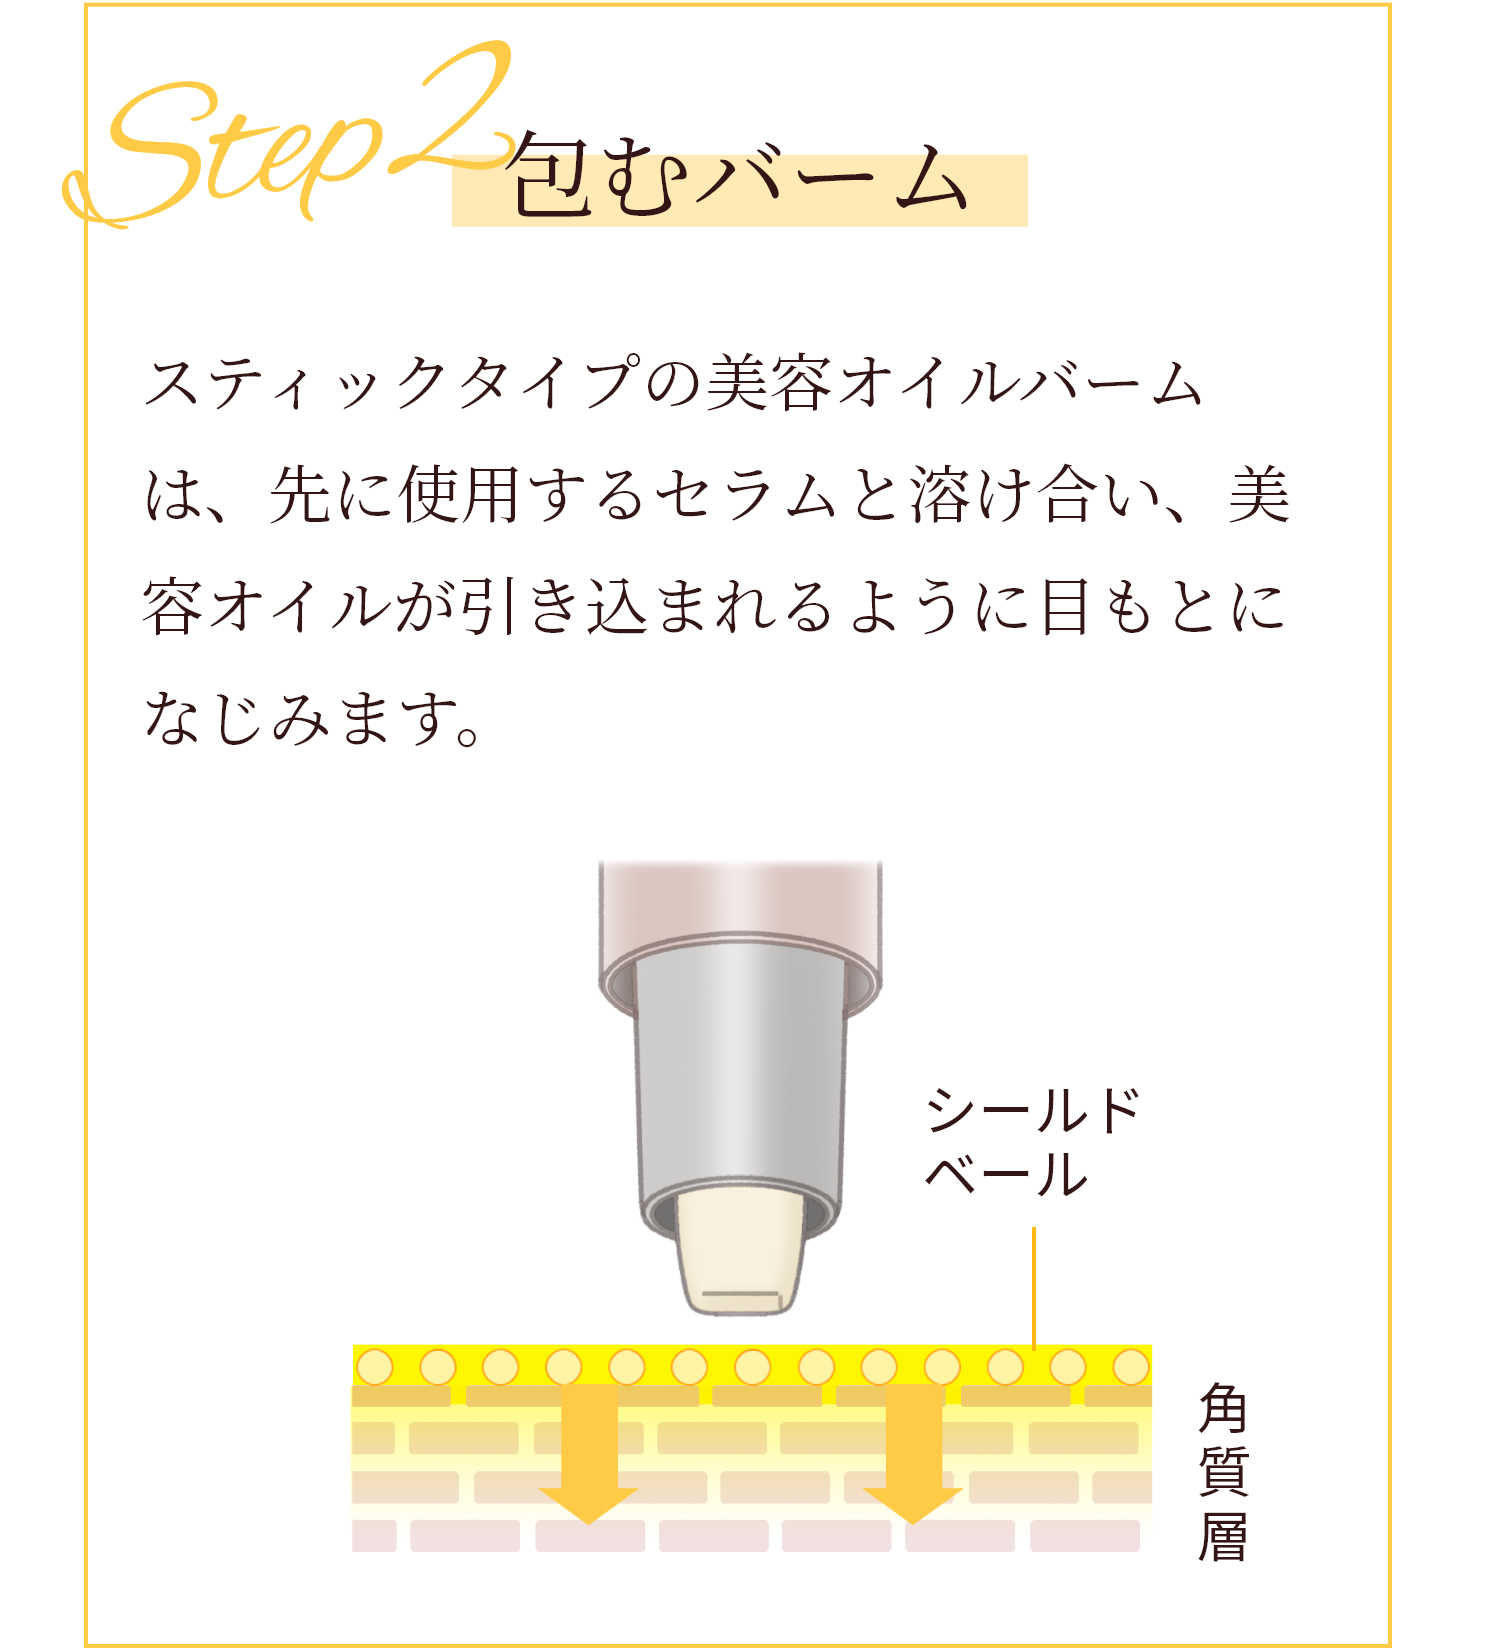 Step02 包むバーム スティックタイプの美容オイルバームは、先に使用するセラムと溶け合い、美容オイルが引き込まれるように目もとに馴染みます。